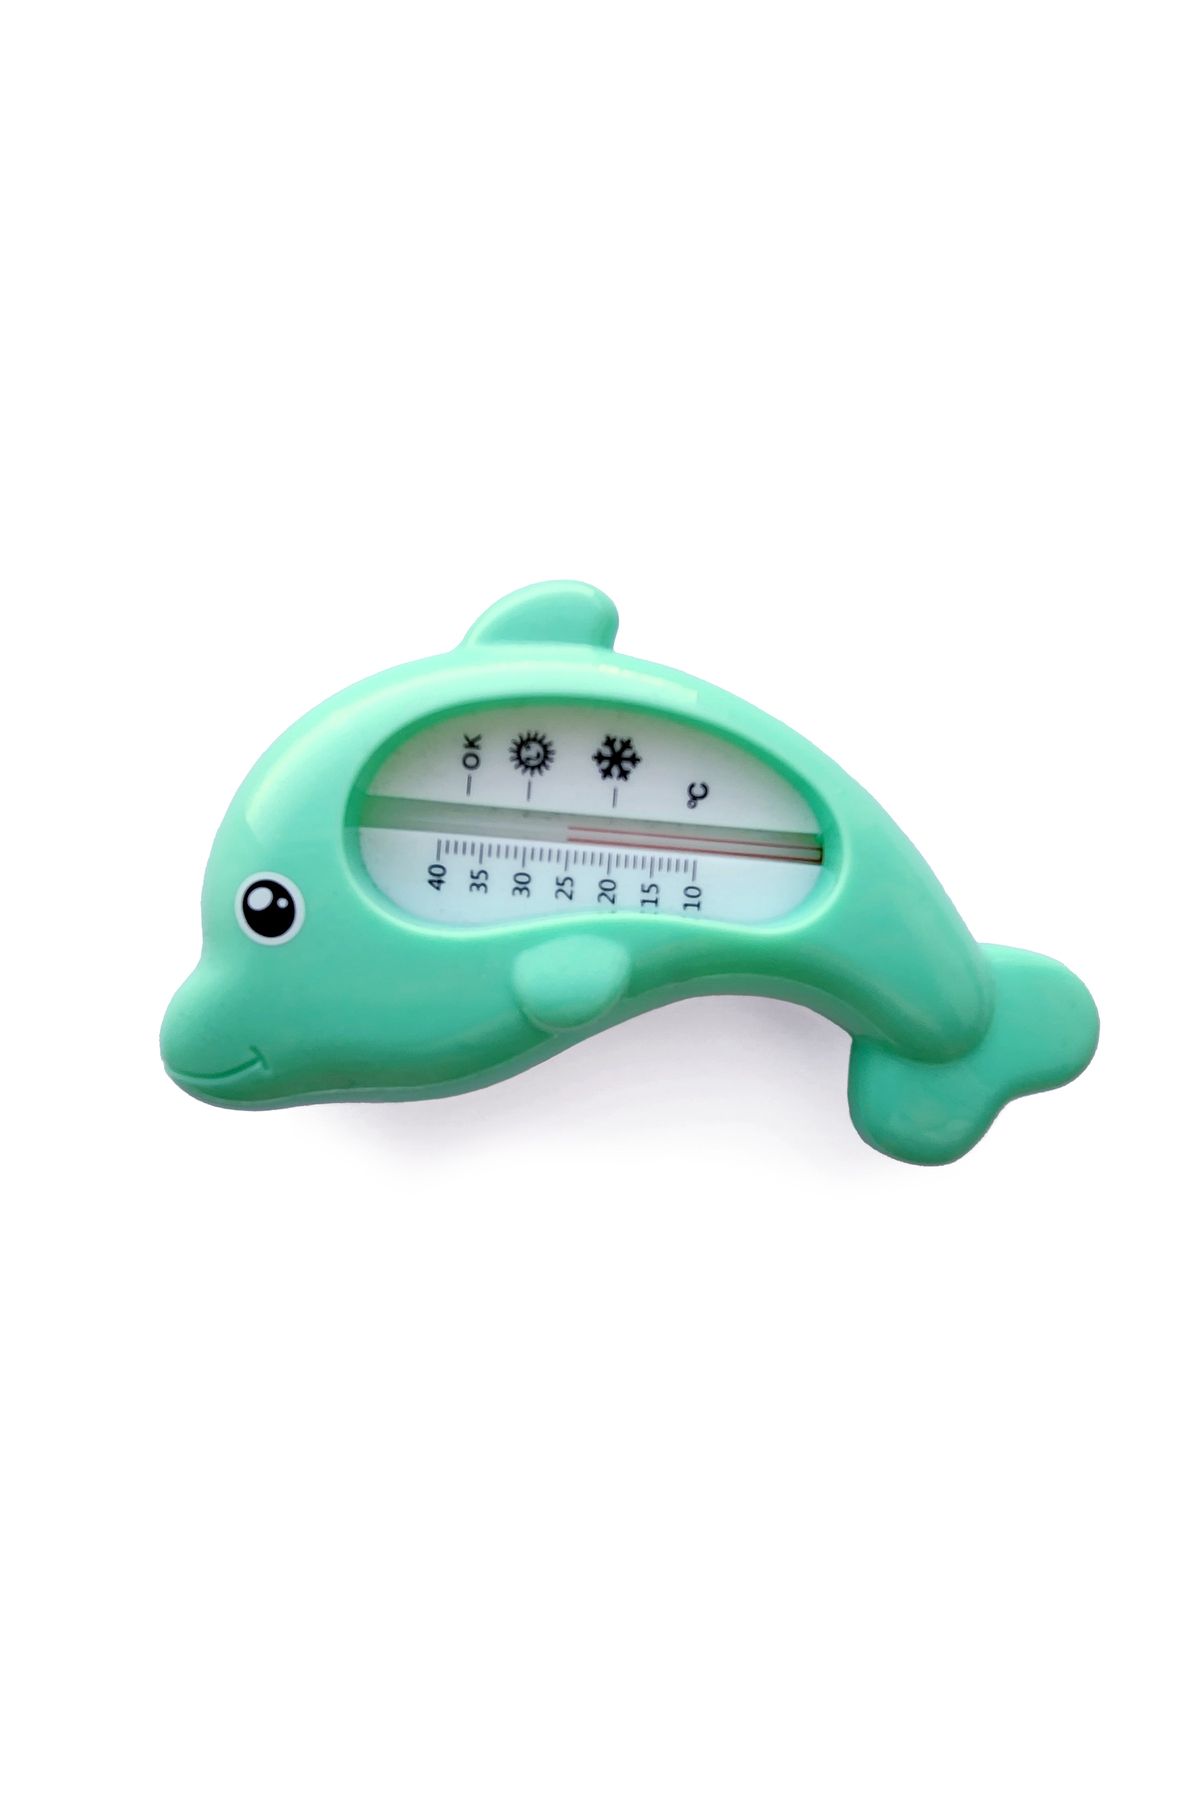 Weewell WTB110 Banyo Termometresi Yeşil